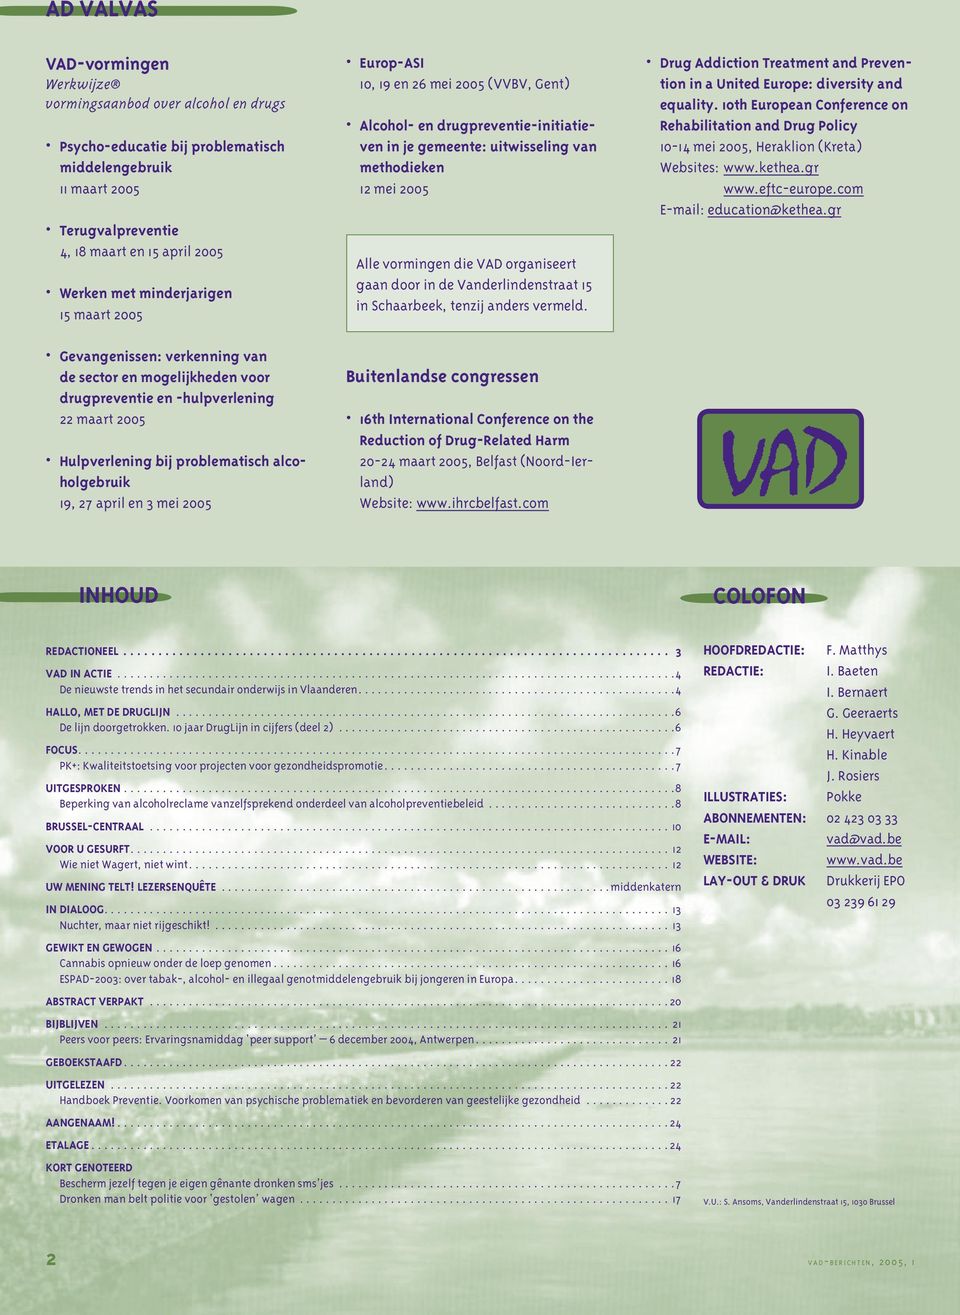 3 mei 2005 Europ-ASI 10, 19 en 26 mei 2005 (VVBV, Gent) Alcohol- en drugpreventie-initiatieven in je gemeente: uitwisseling van methodieken 12 mei 2005 Alle vormingen die VAD organiseert gaan door in